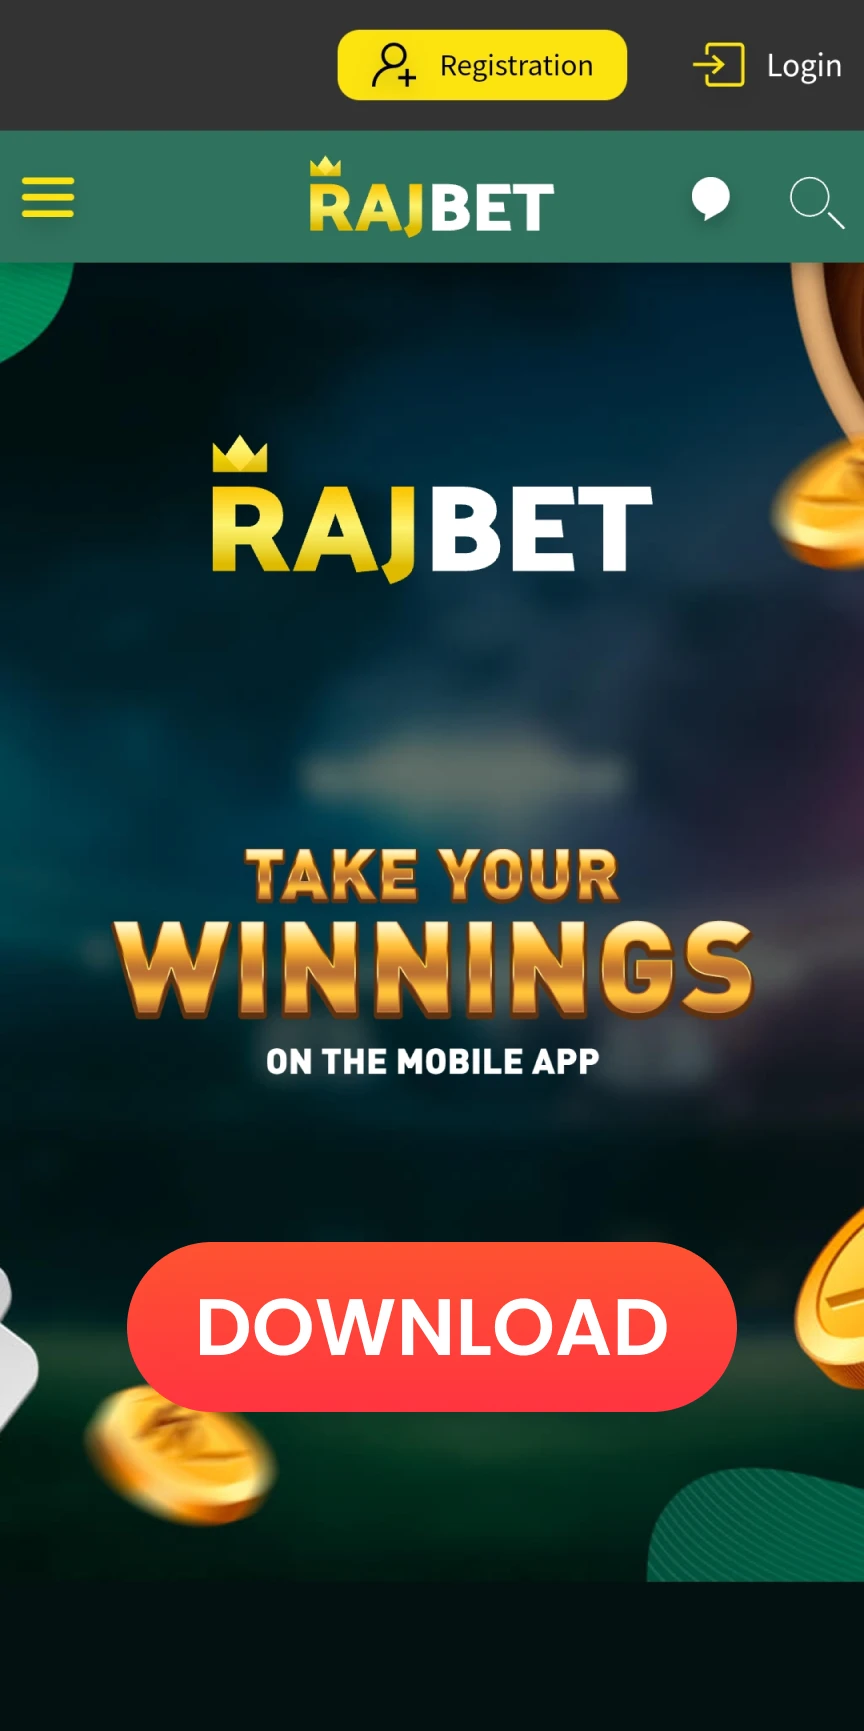 Você precisa começar a baixar o aplicativo Rajbet para iOS.